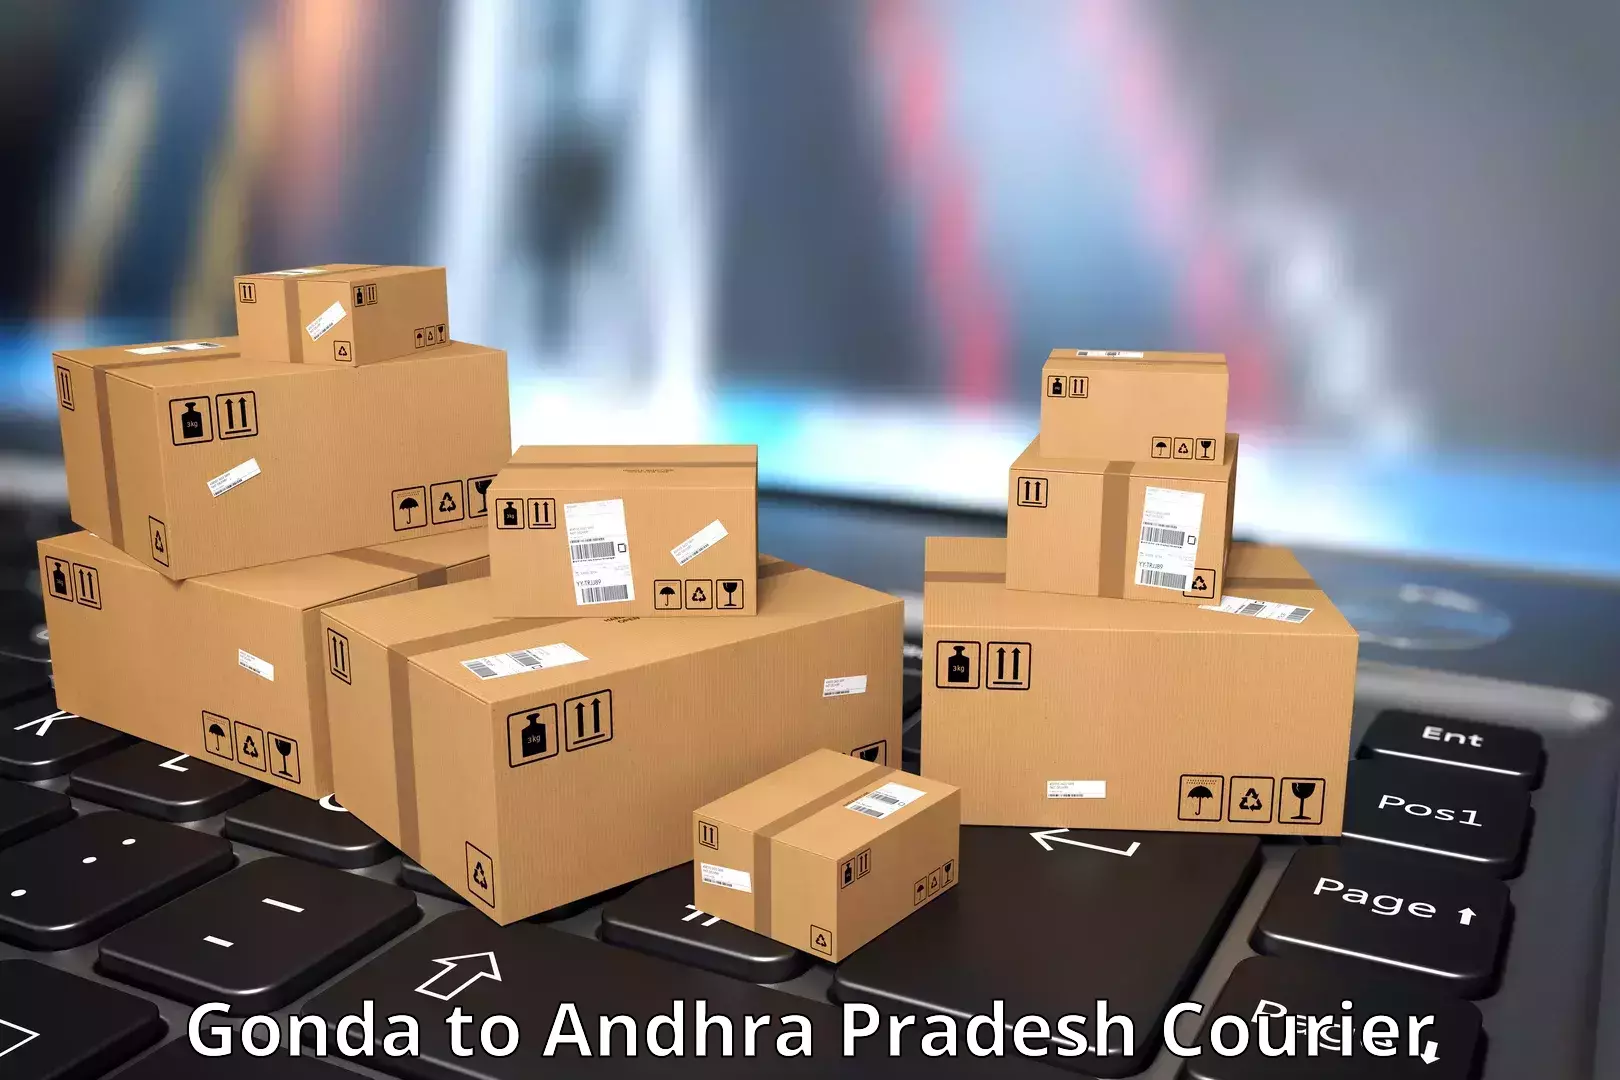 Holiday shipping services Gonda to Andhra Pradesh